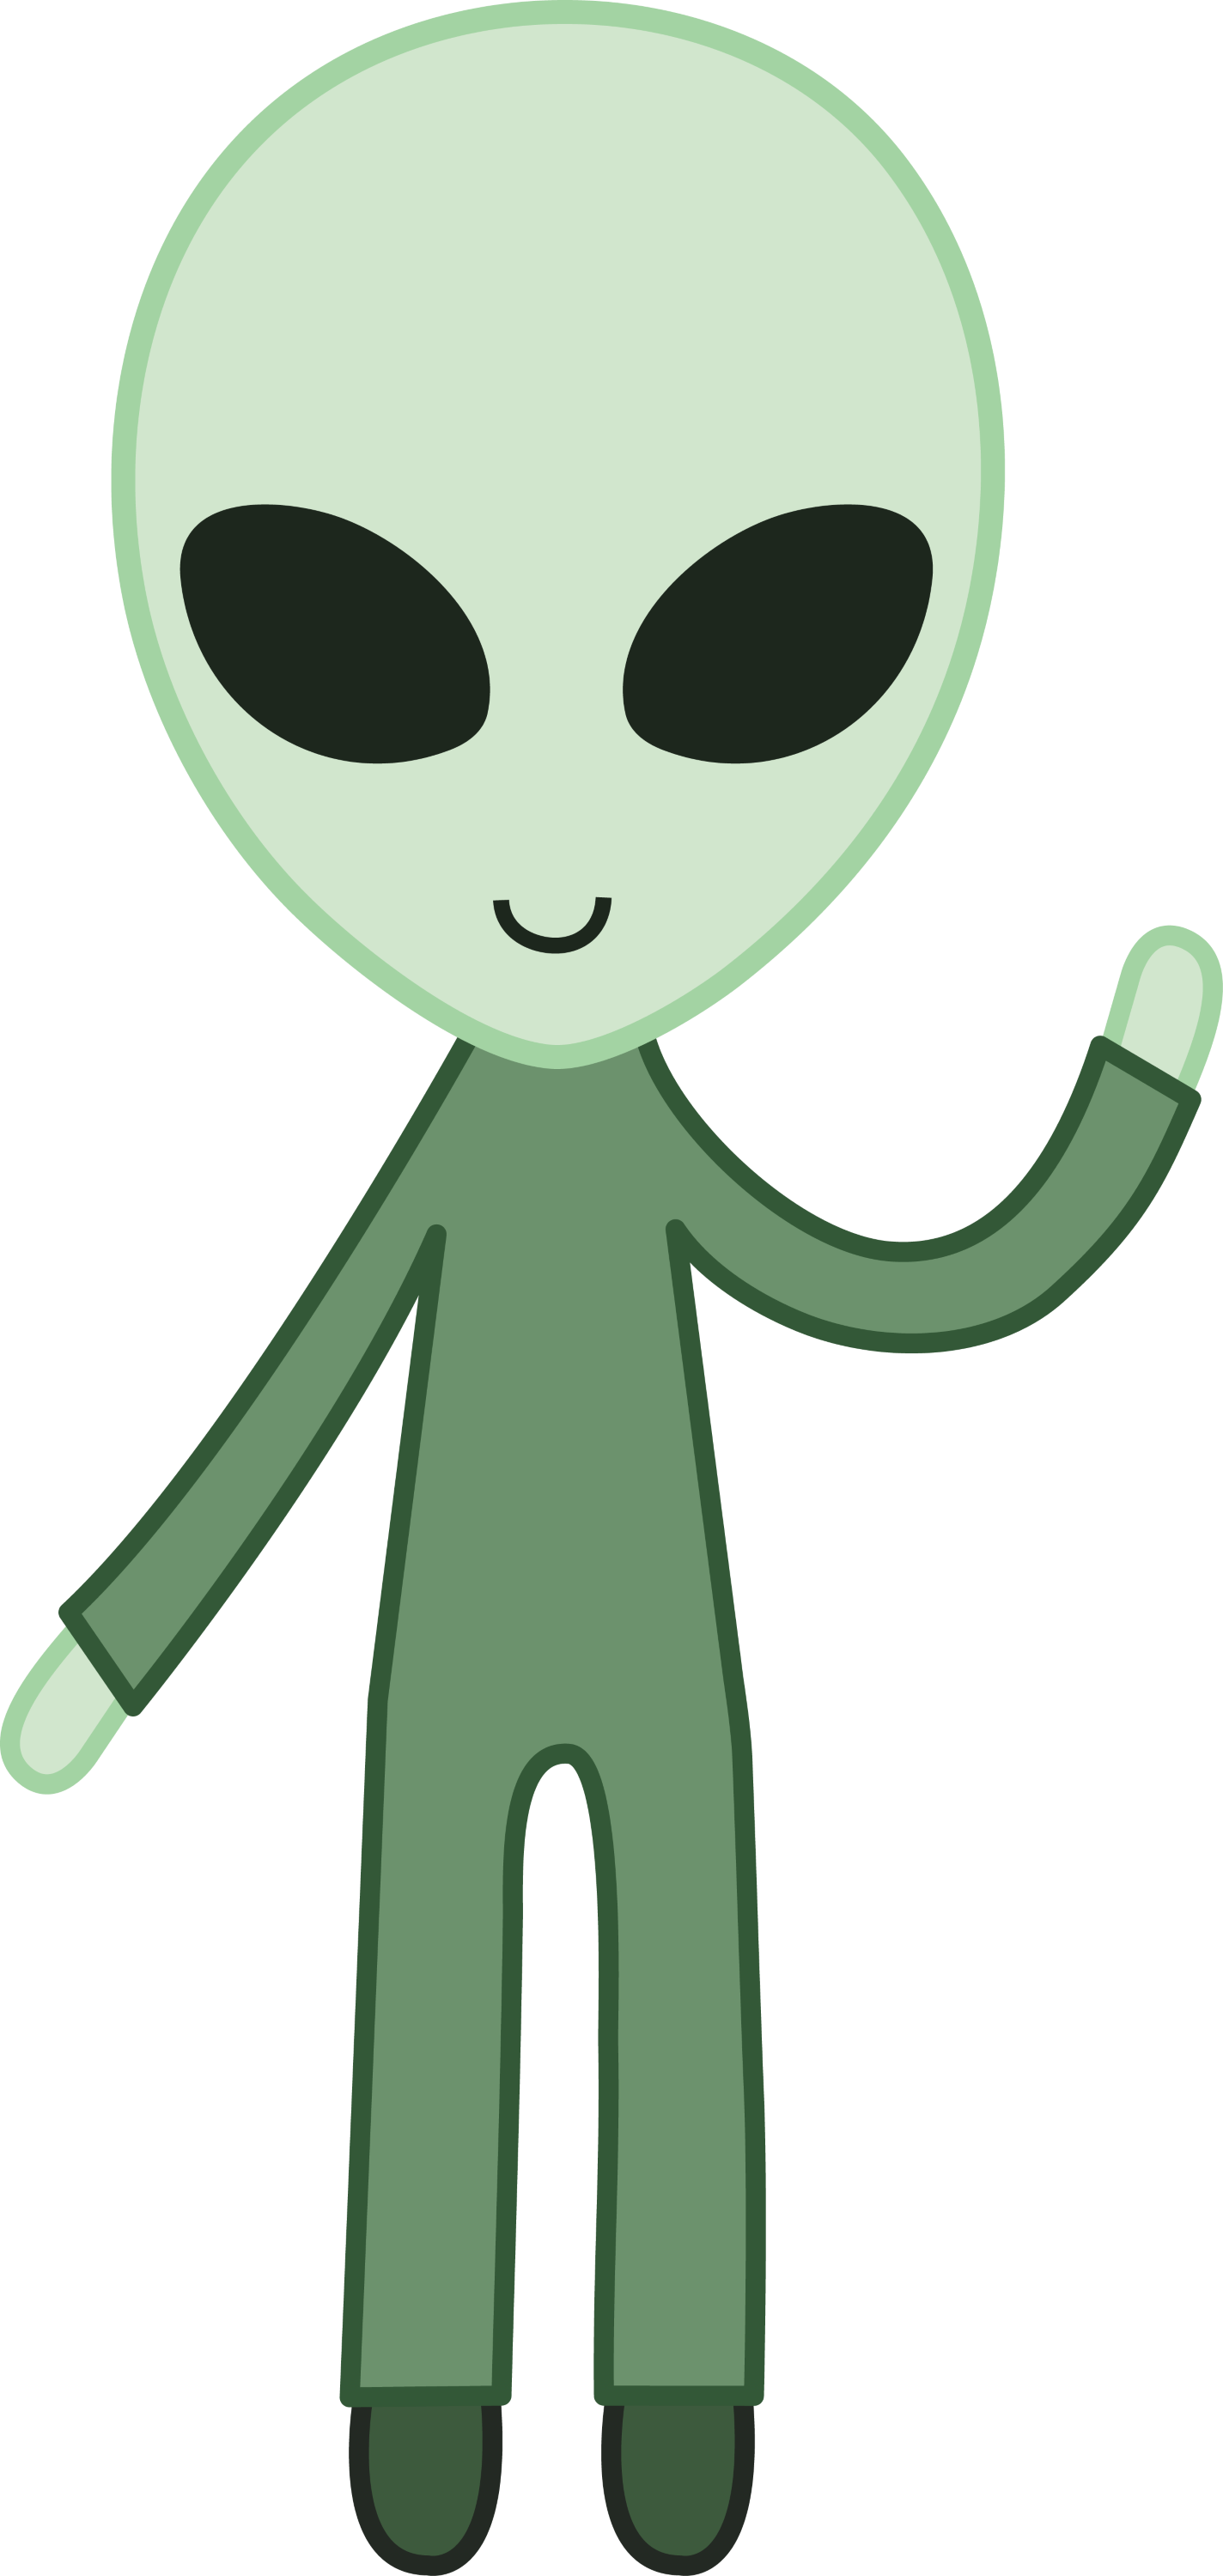 Friendly Green Space Alien - Free Clip Art